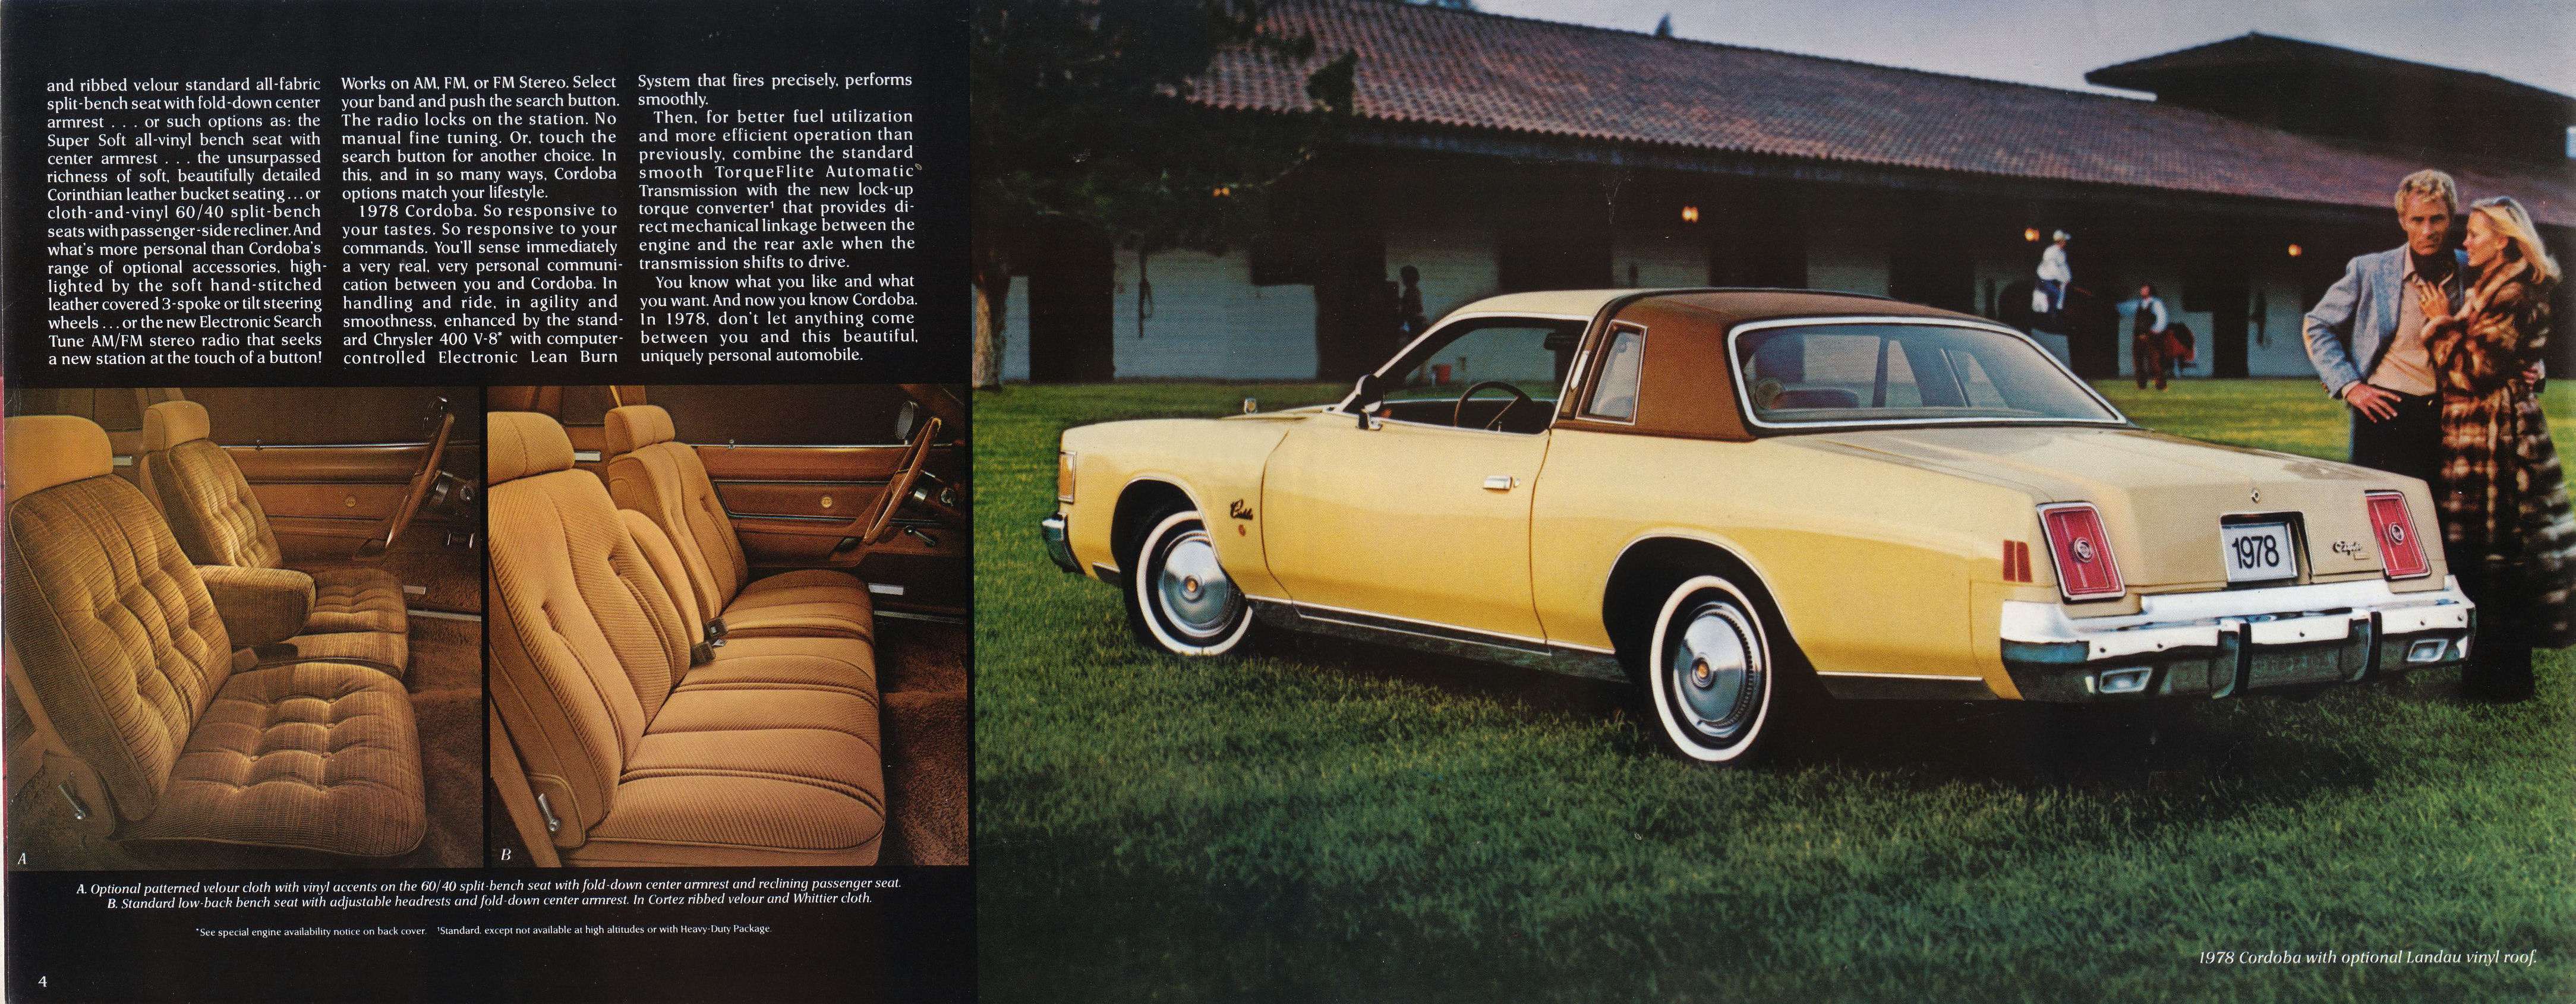 1978 Chrysler Cordoba Brochure Page 2